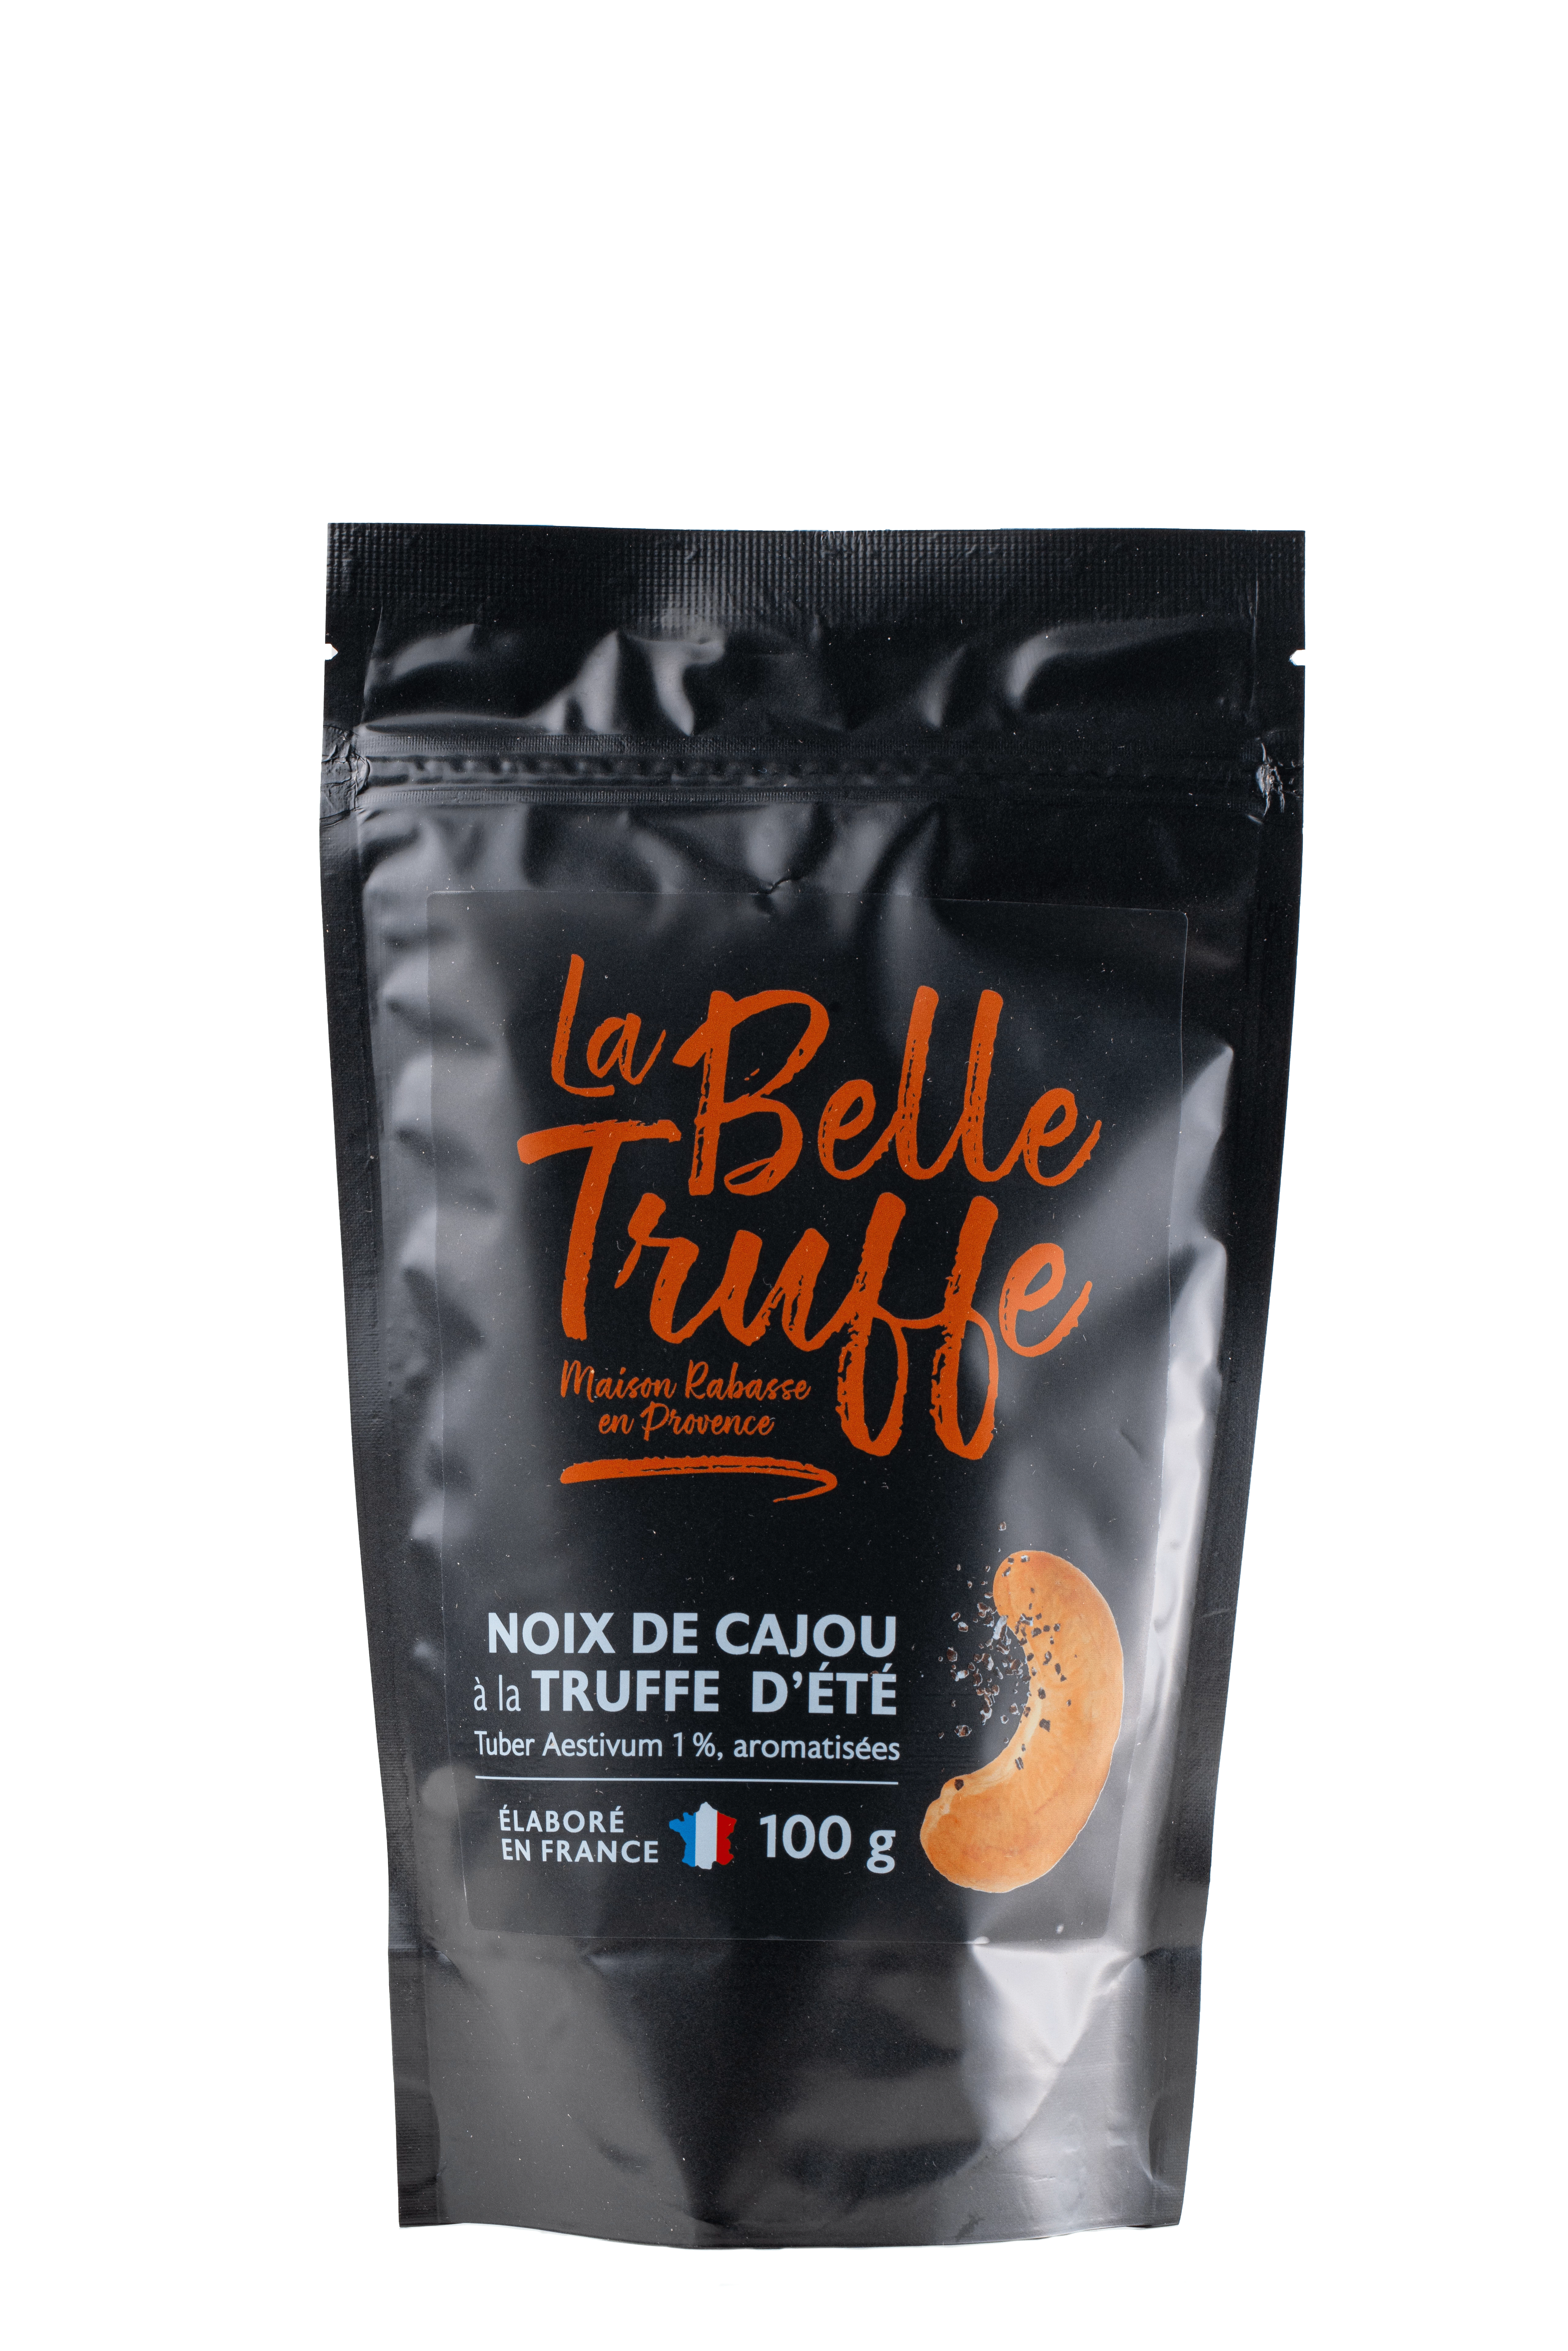 Cashew Nuts with Truffle, 100g -  LA BELLE TRUFFE